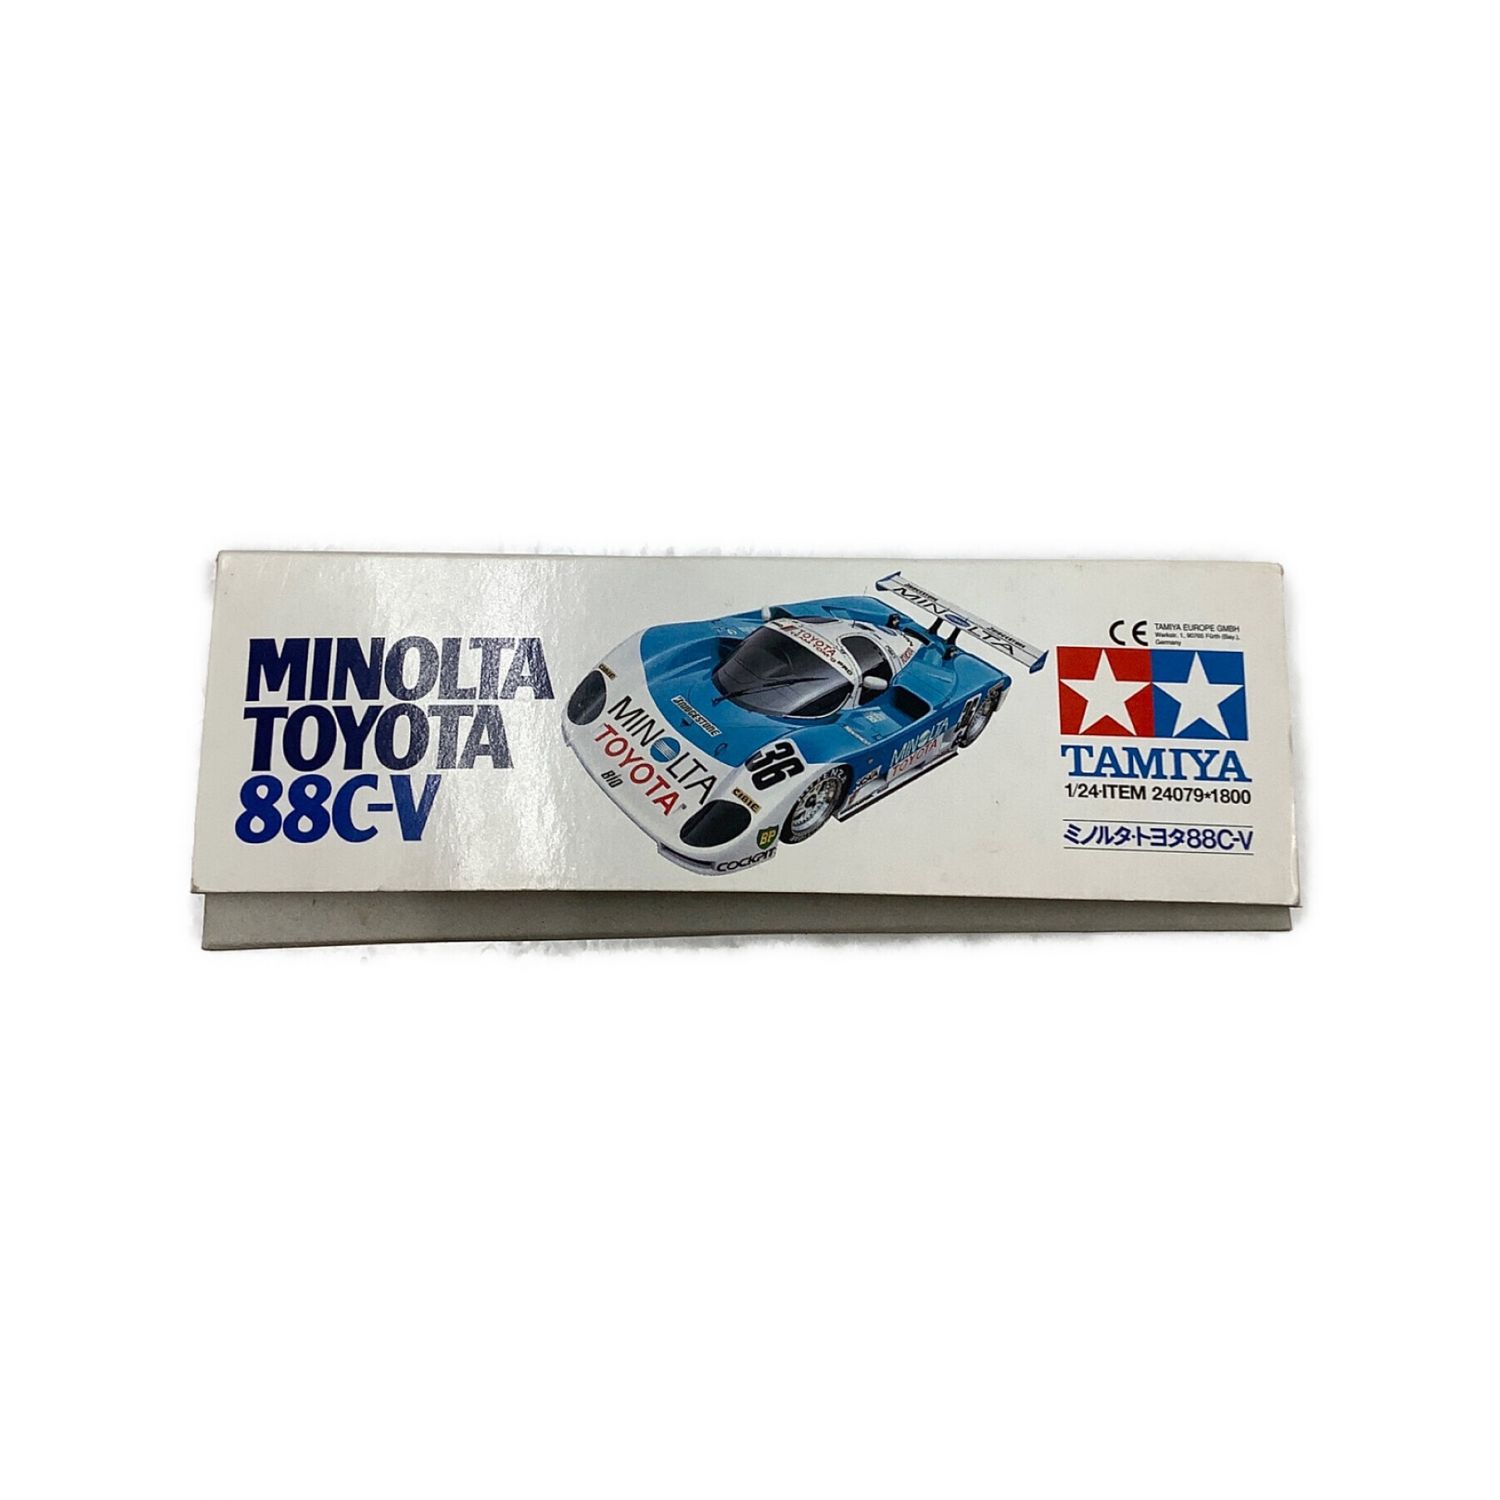 TAMIYA (タミヤ) プラモデル ミノルタ・トヨタ88C-V 1/24スポーツカー